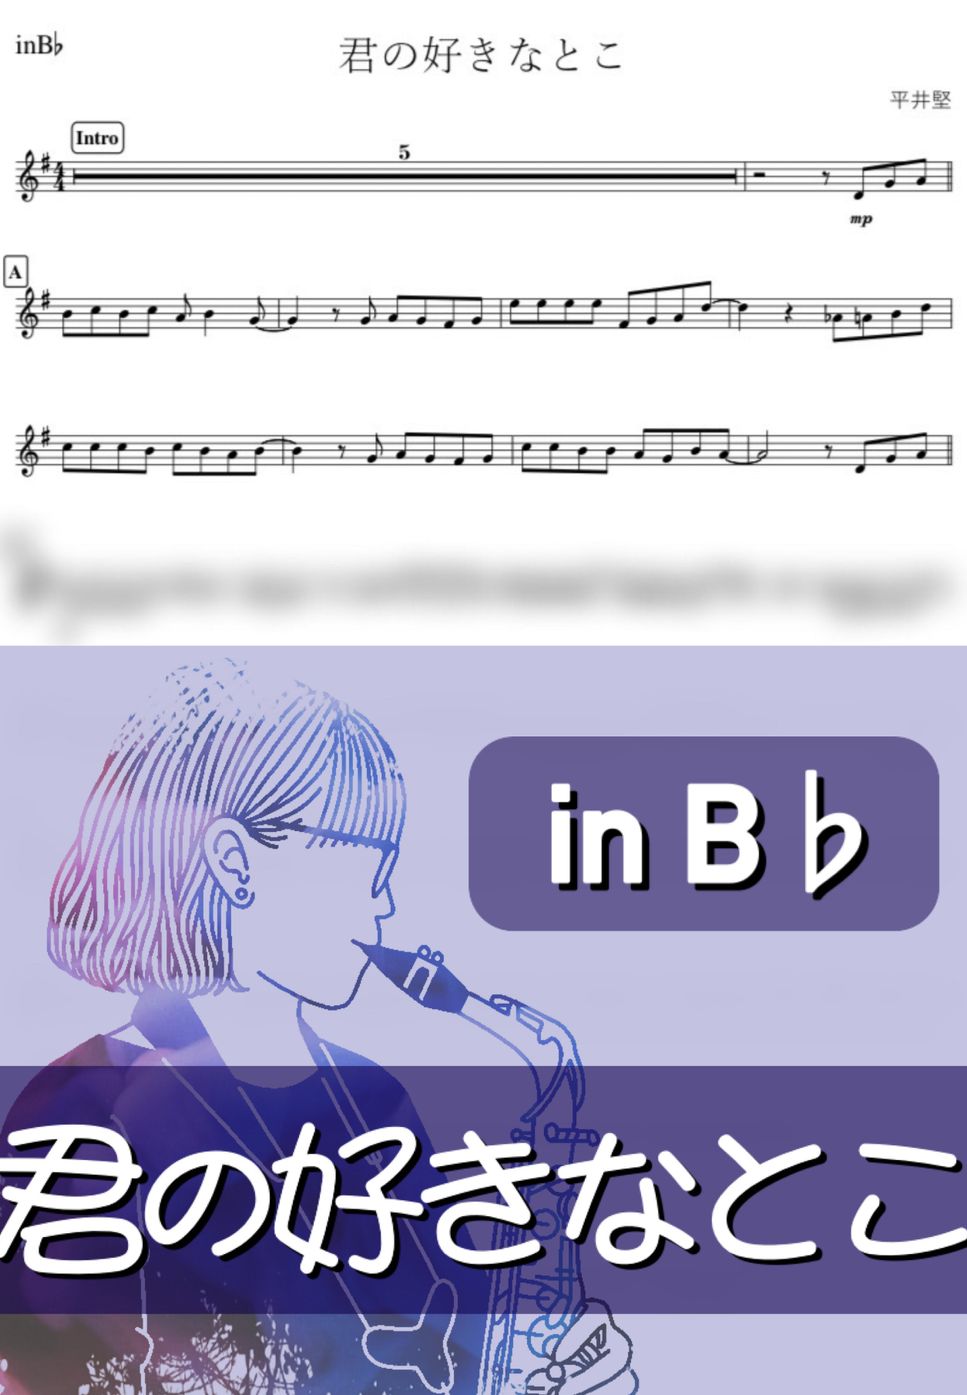 平井堅 - 君の好きなとこ (B♭) by kanamusic